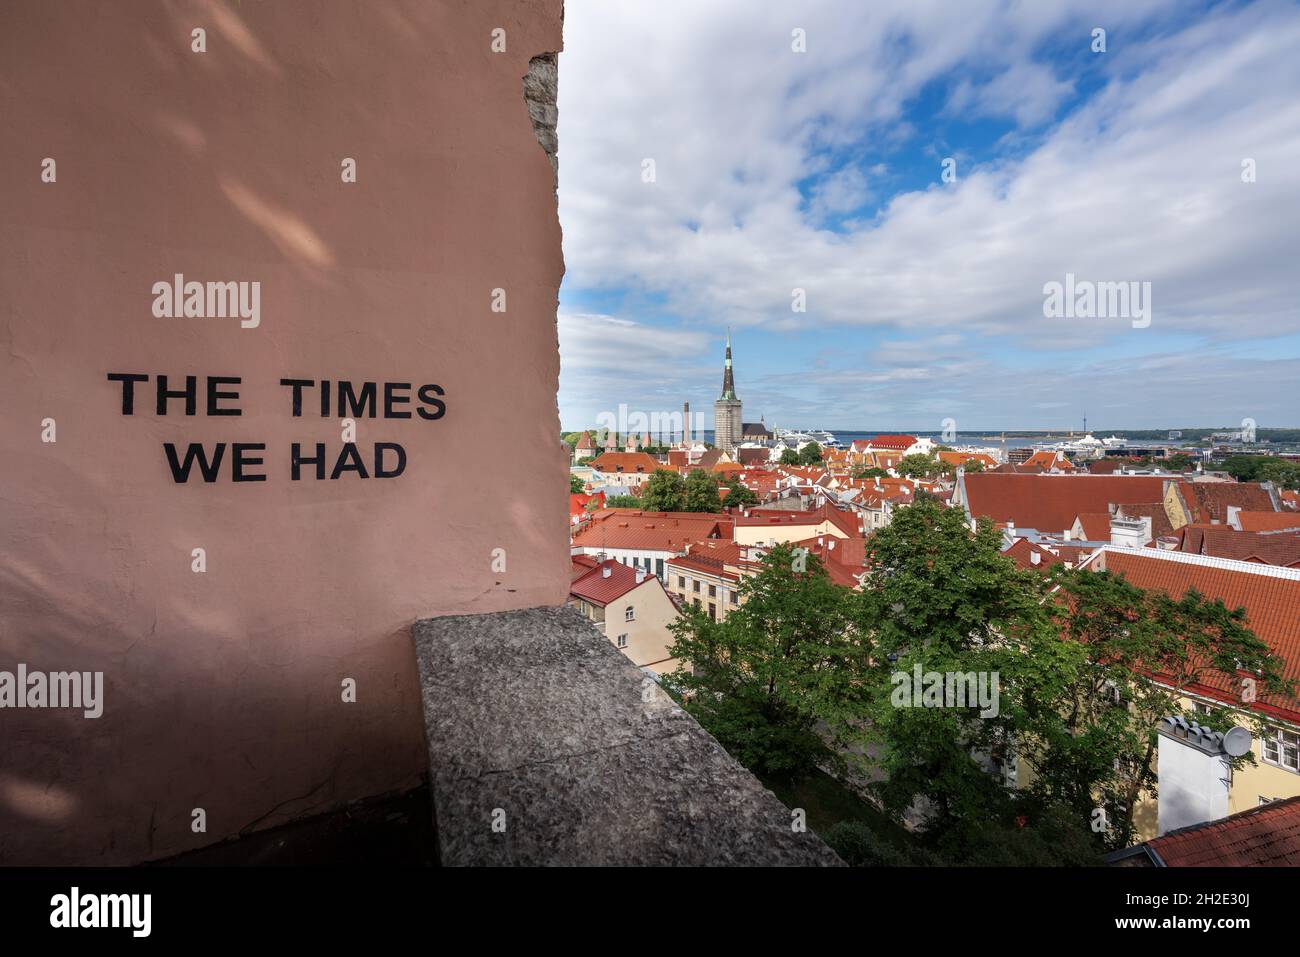 Kohtuotsa Viewing Plataform célèbre point de vue de Tallinn - Tallinn, Estonie Banque D'Images